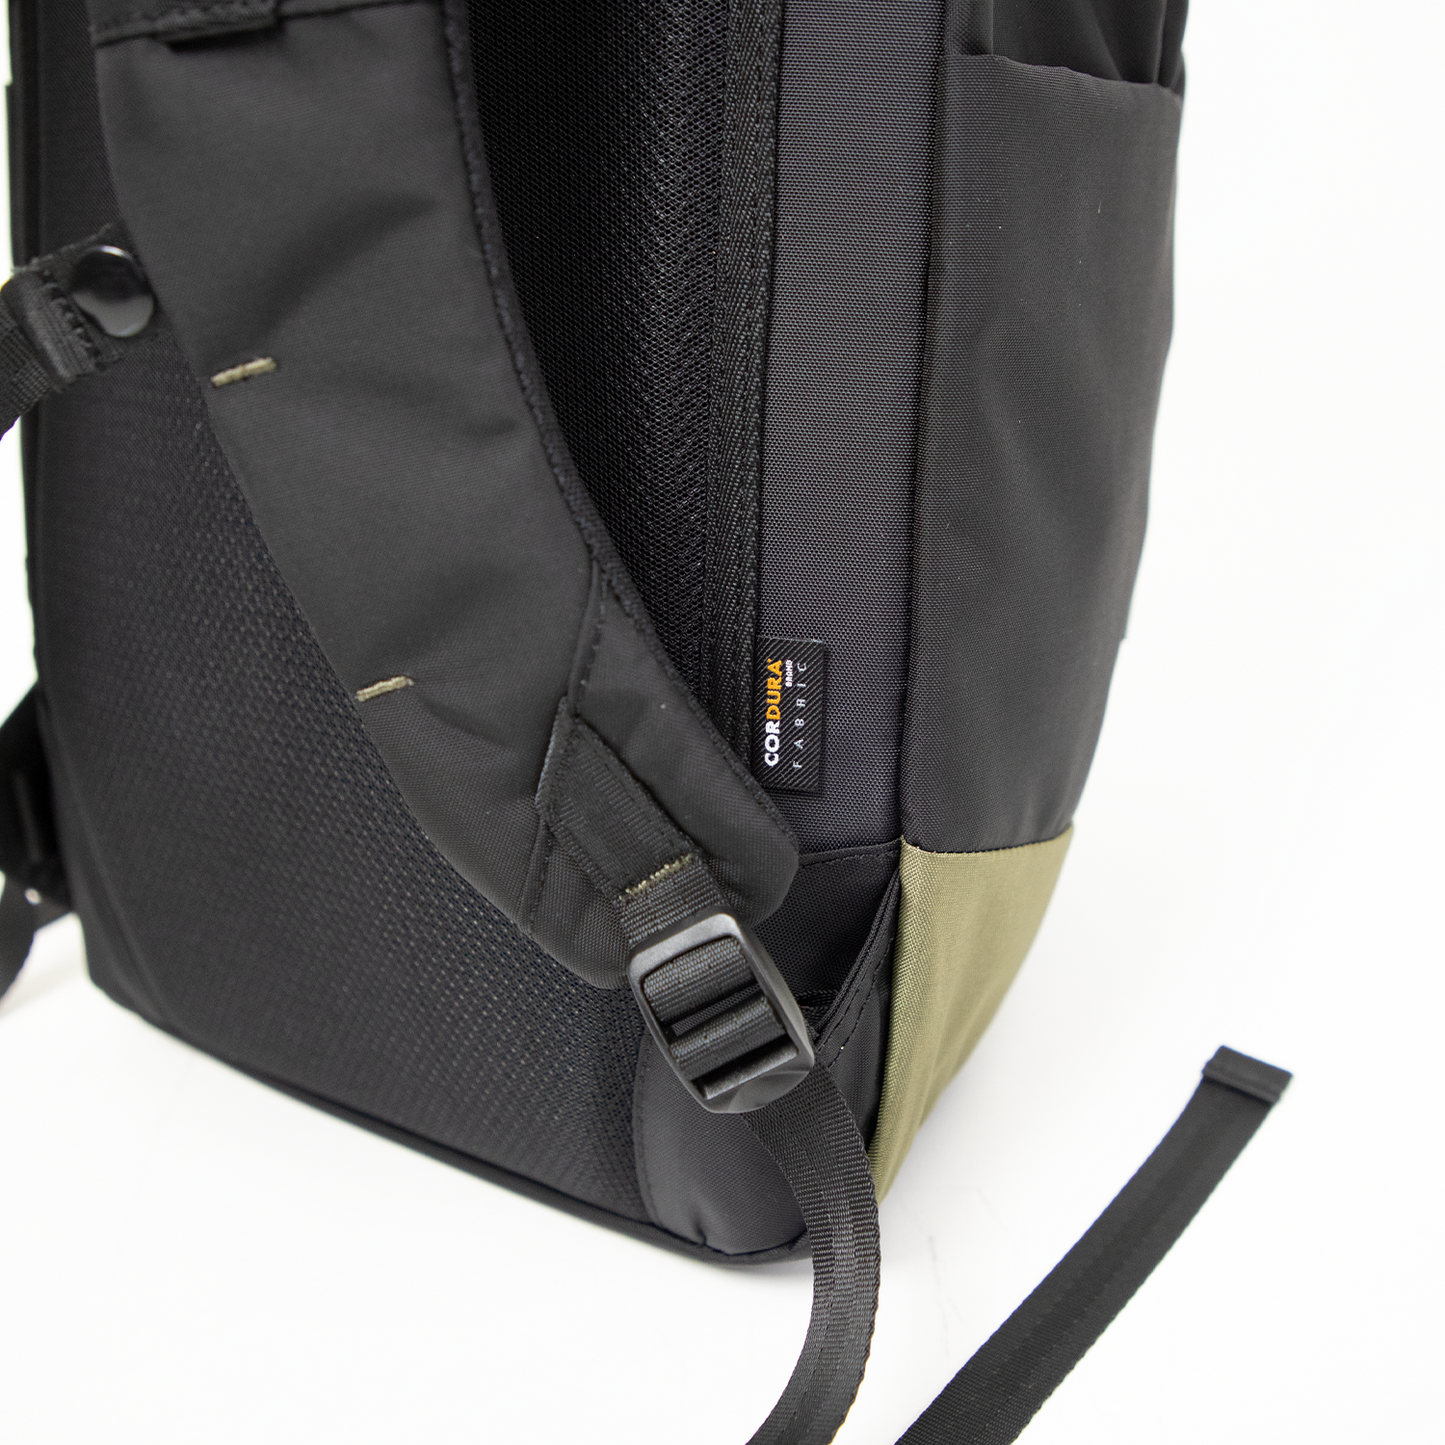 Astir Large Titan Series Backpack